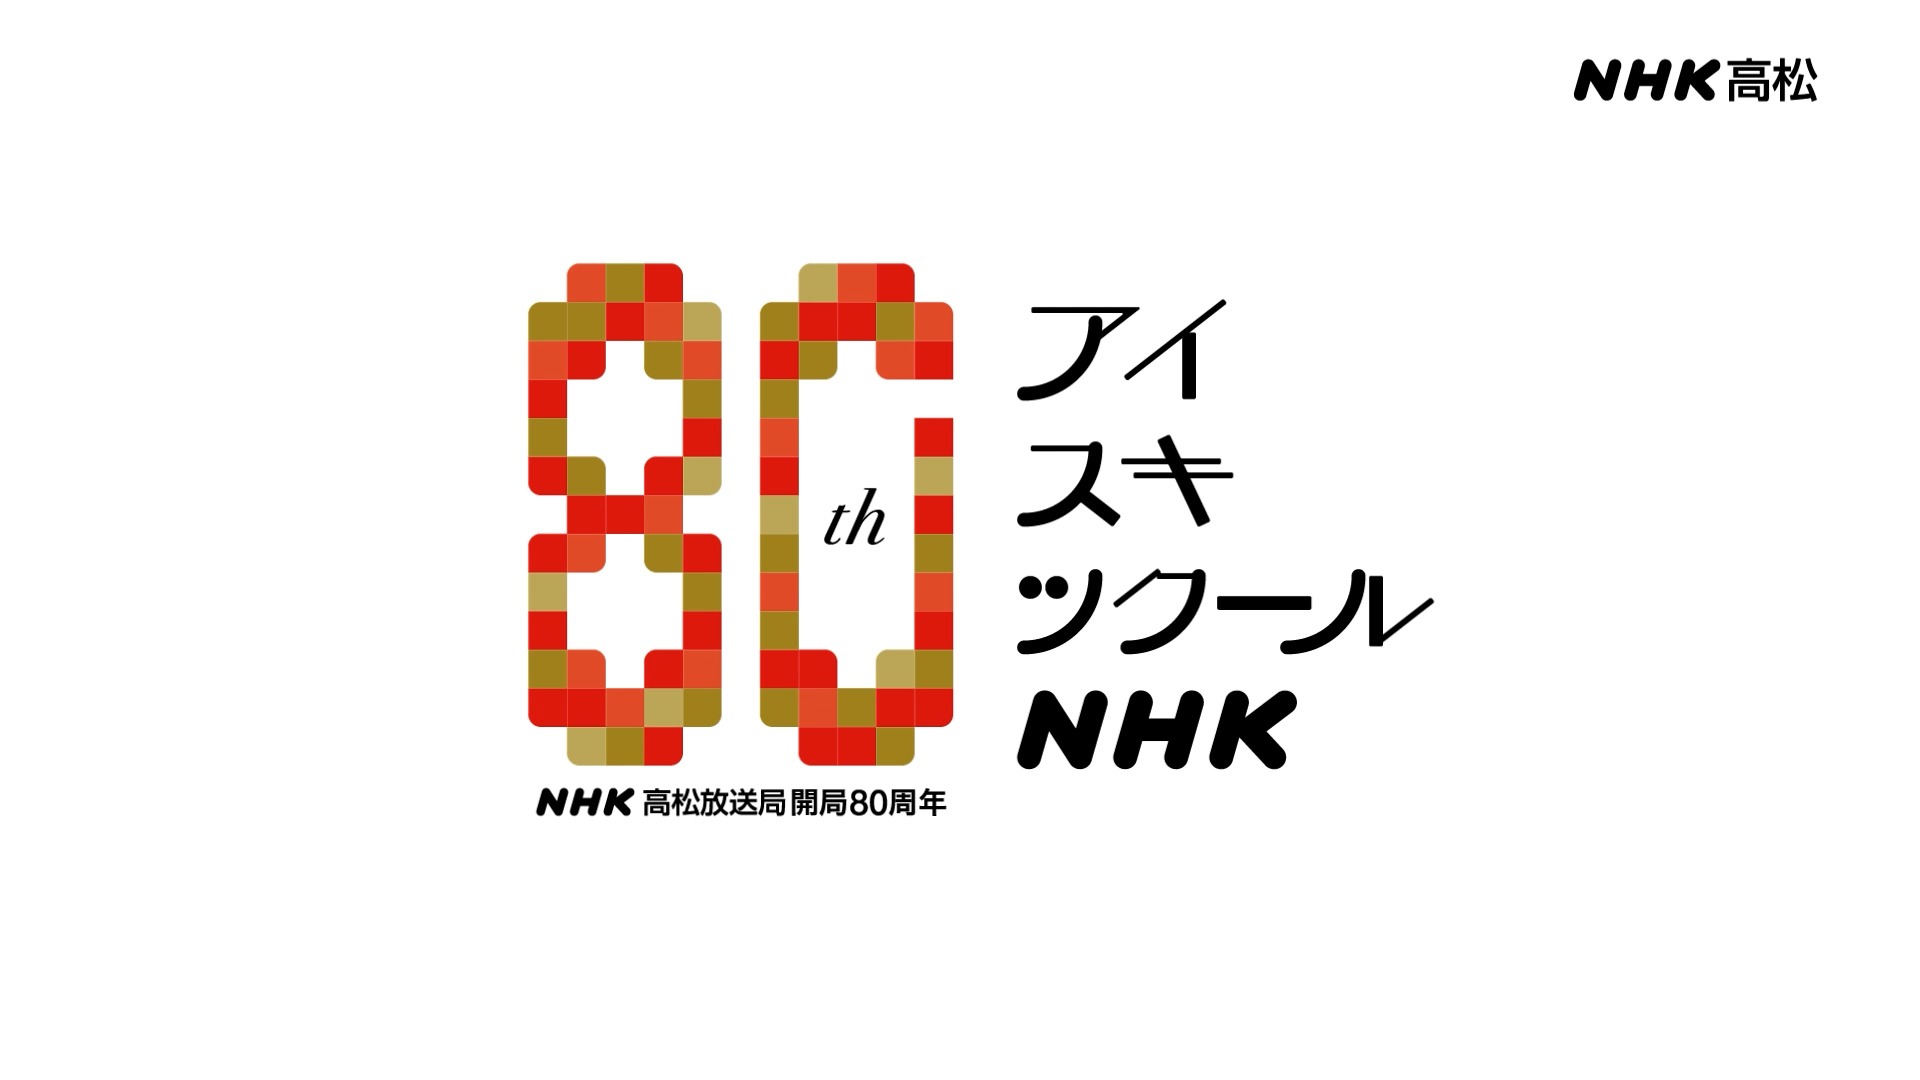 NHK高松放送局 開局80周年記念動画